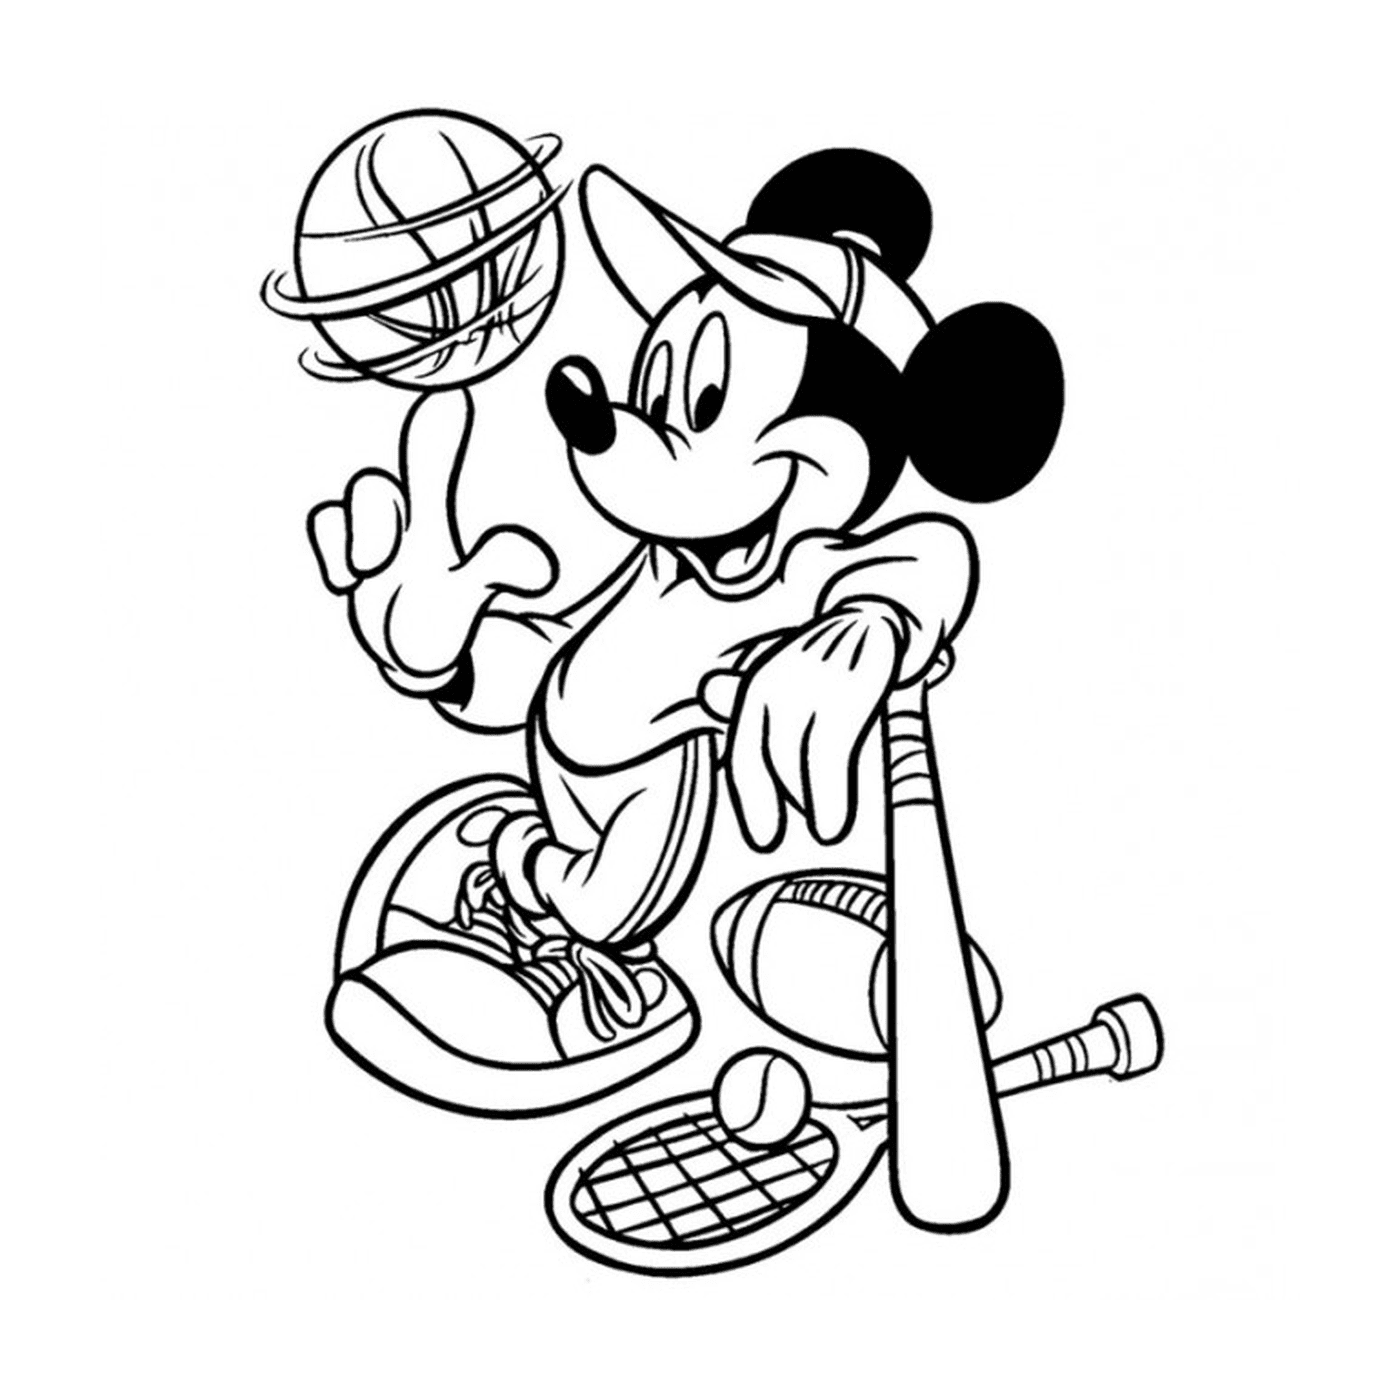  Esporte, Disney, Mickey Mouse segurando um taco de beisebol e uma bola 